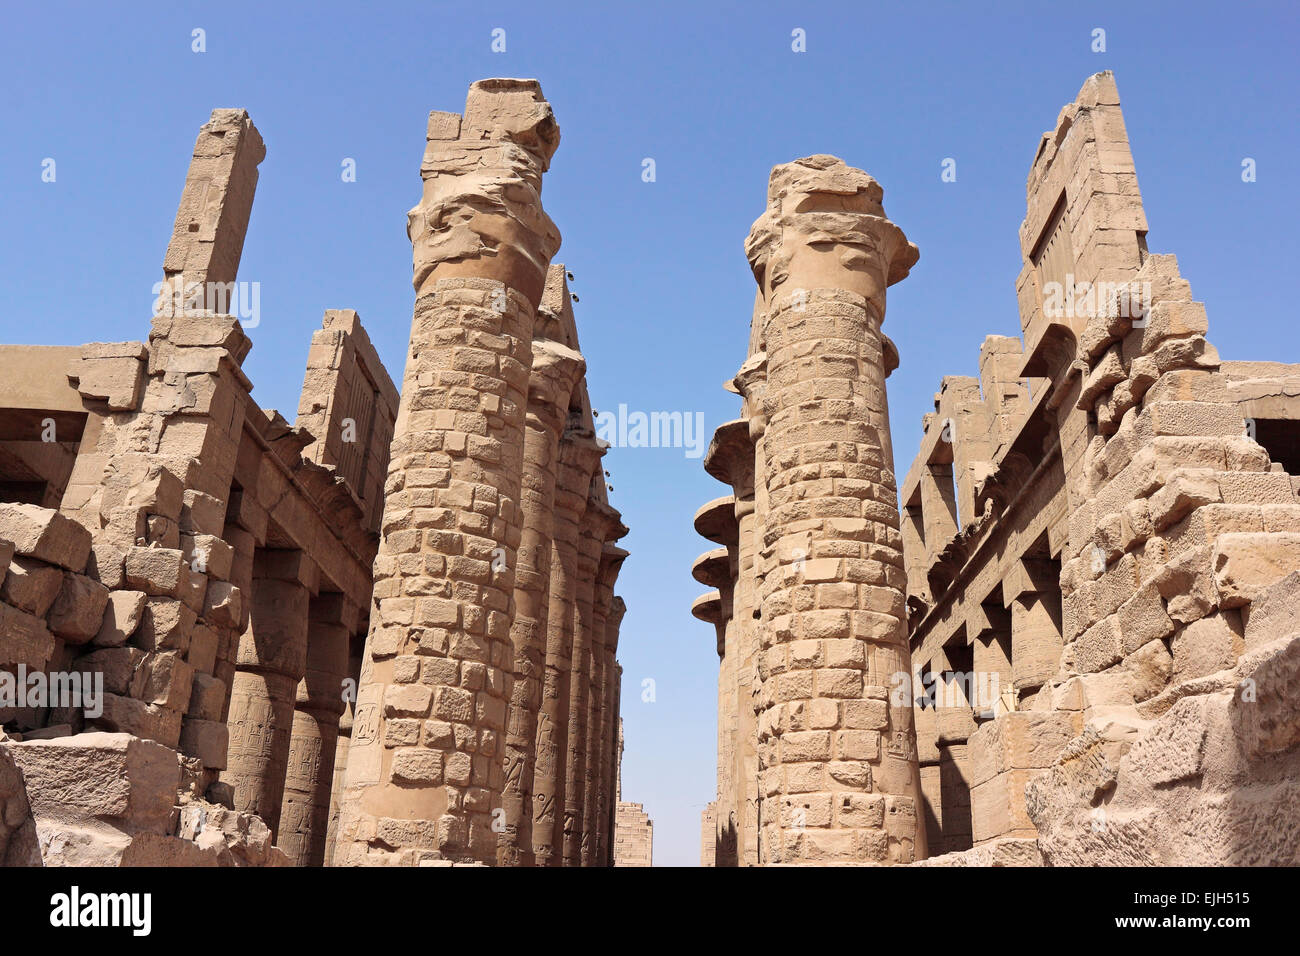 Columnas en el templo de Karnak, Luxor, Egipto Foto de stock